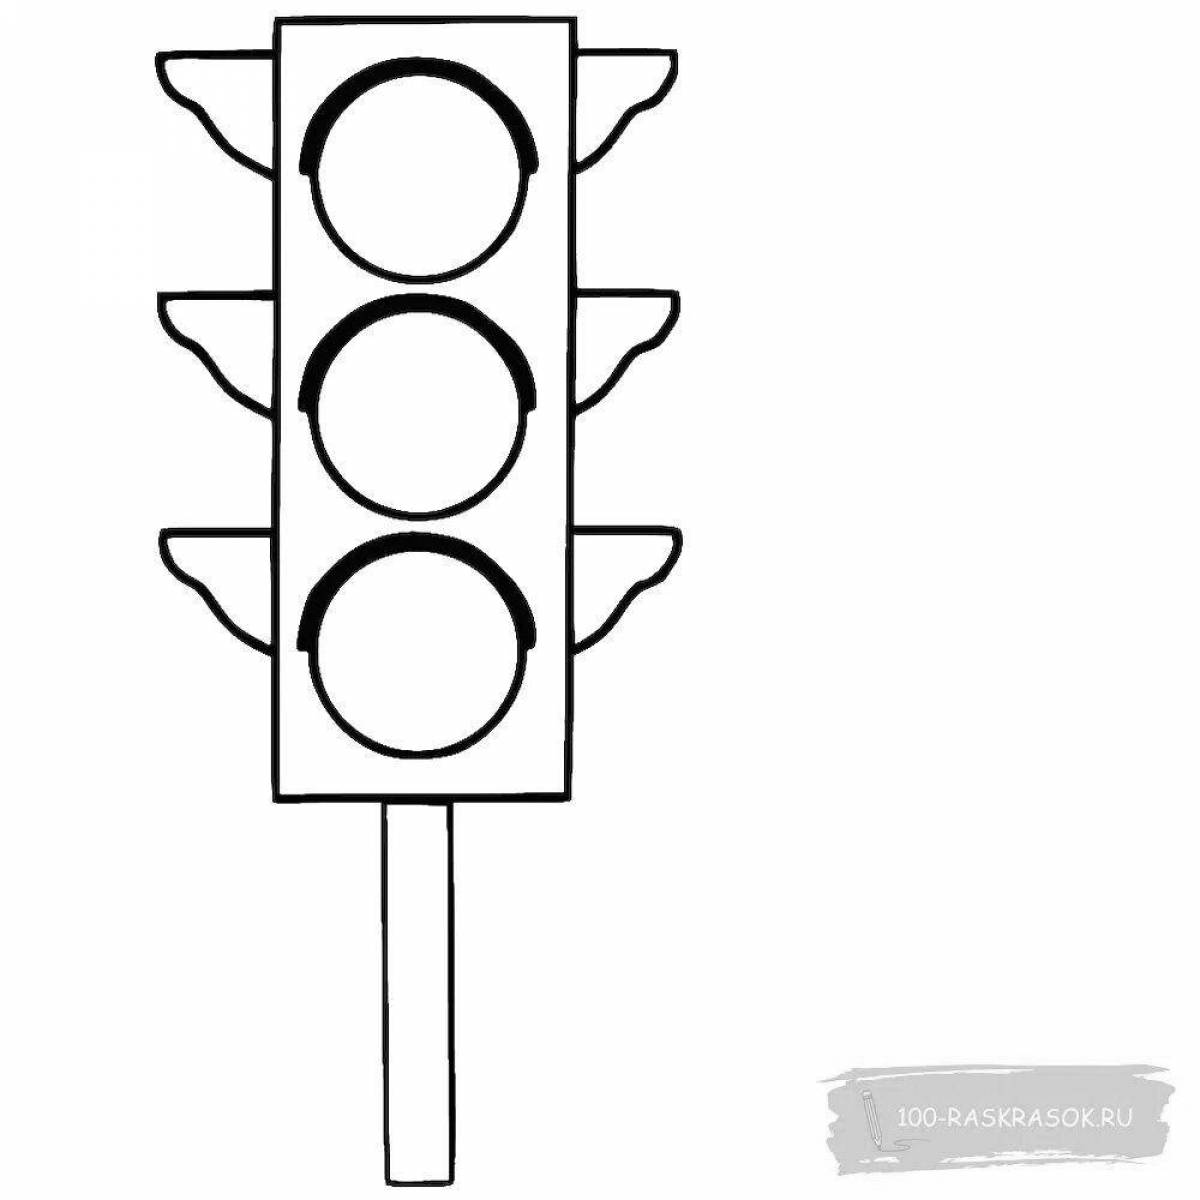 Traffic light for children 5 6 years old #24